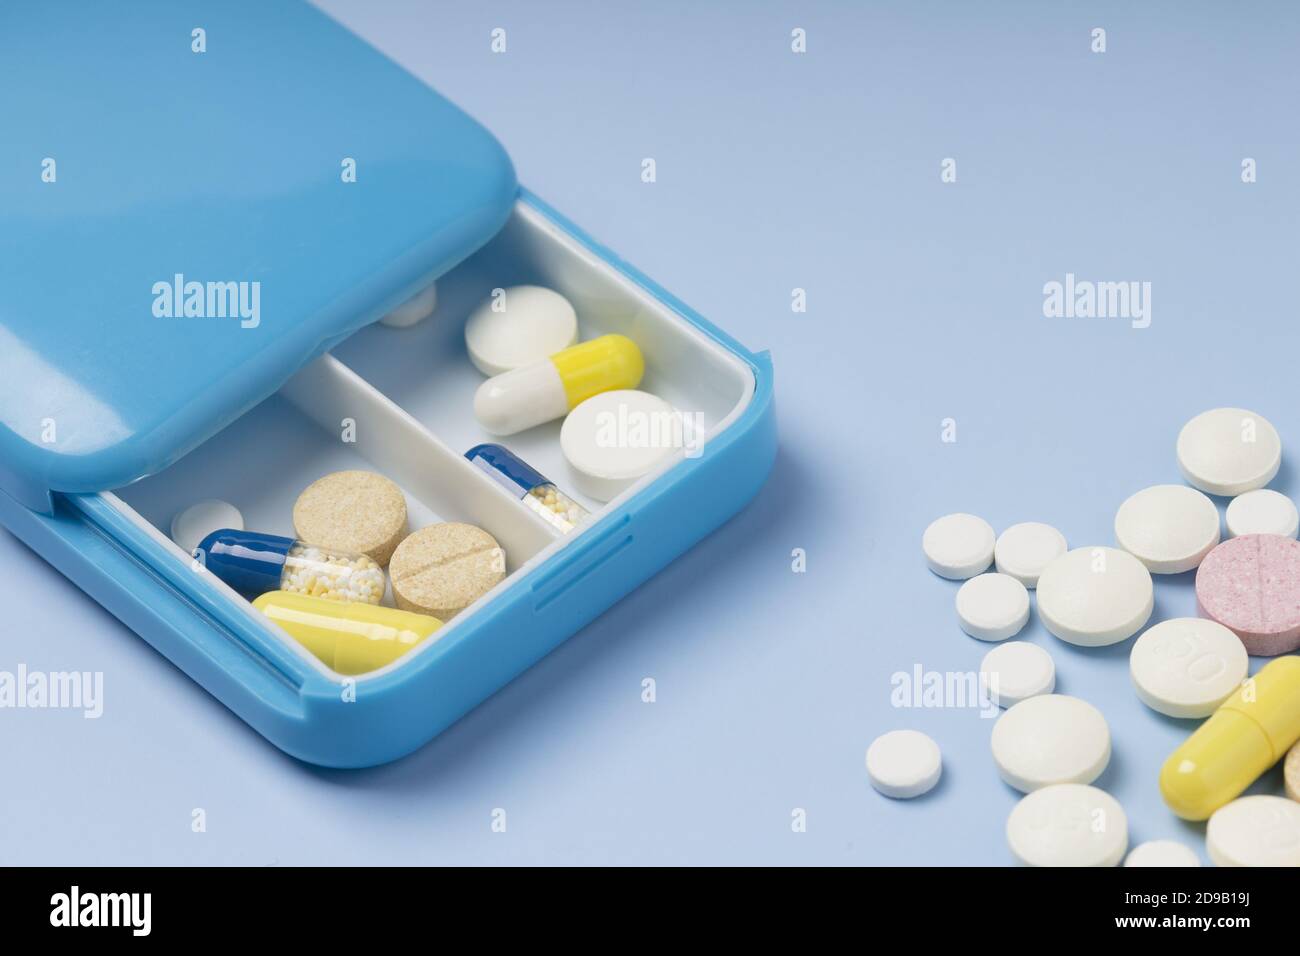 Ежедневные лекарства. Таблетки витамины в голубой упаковке. Дозирование препарата фон. Фото медикаментов в синем цвете. Футляр д/лекарств Pill Box овальный.